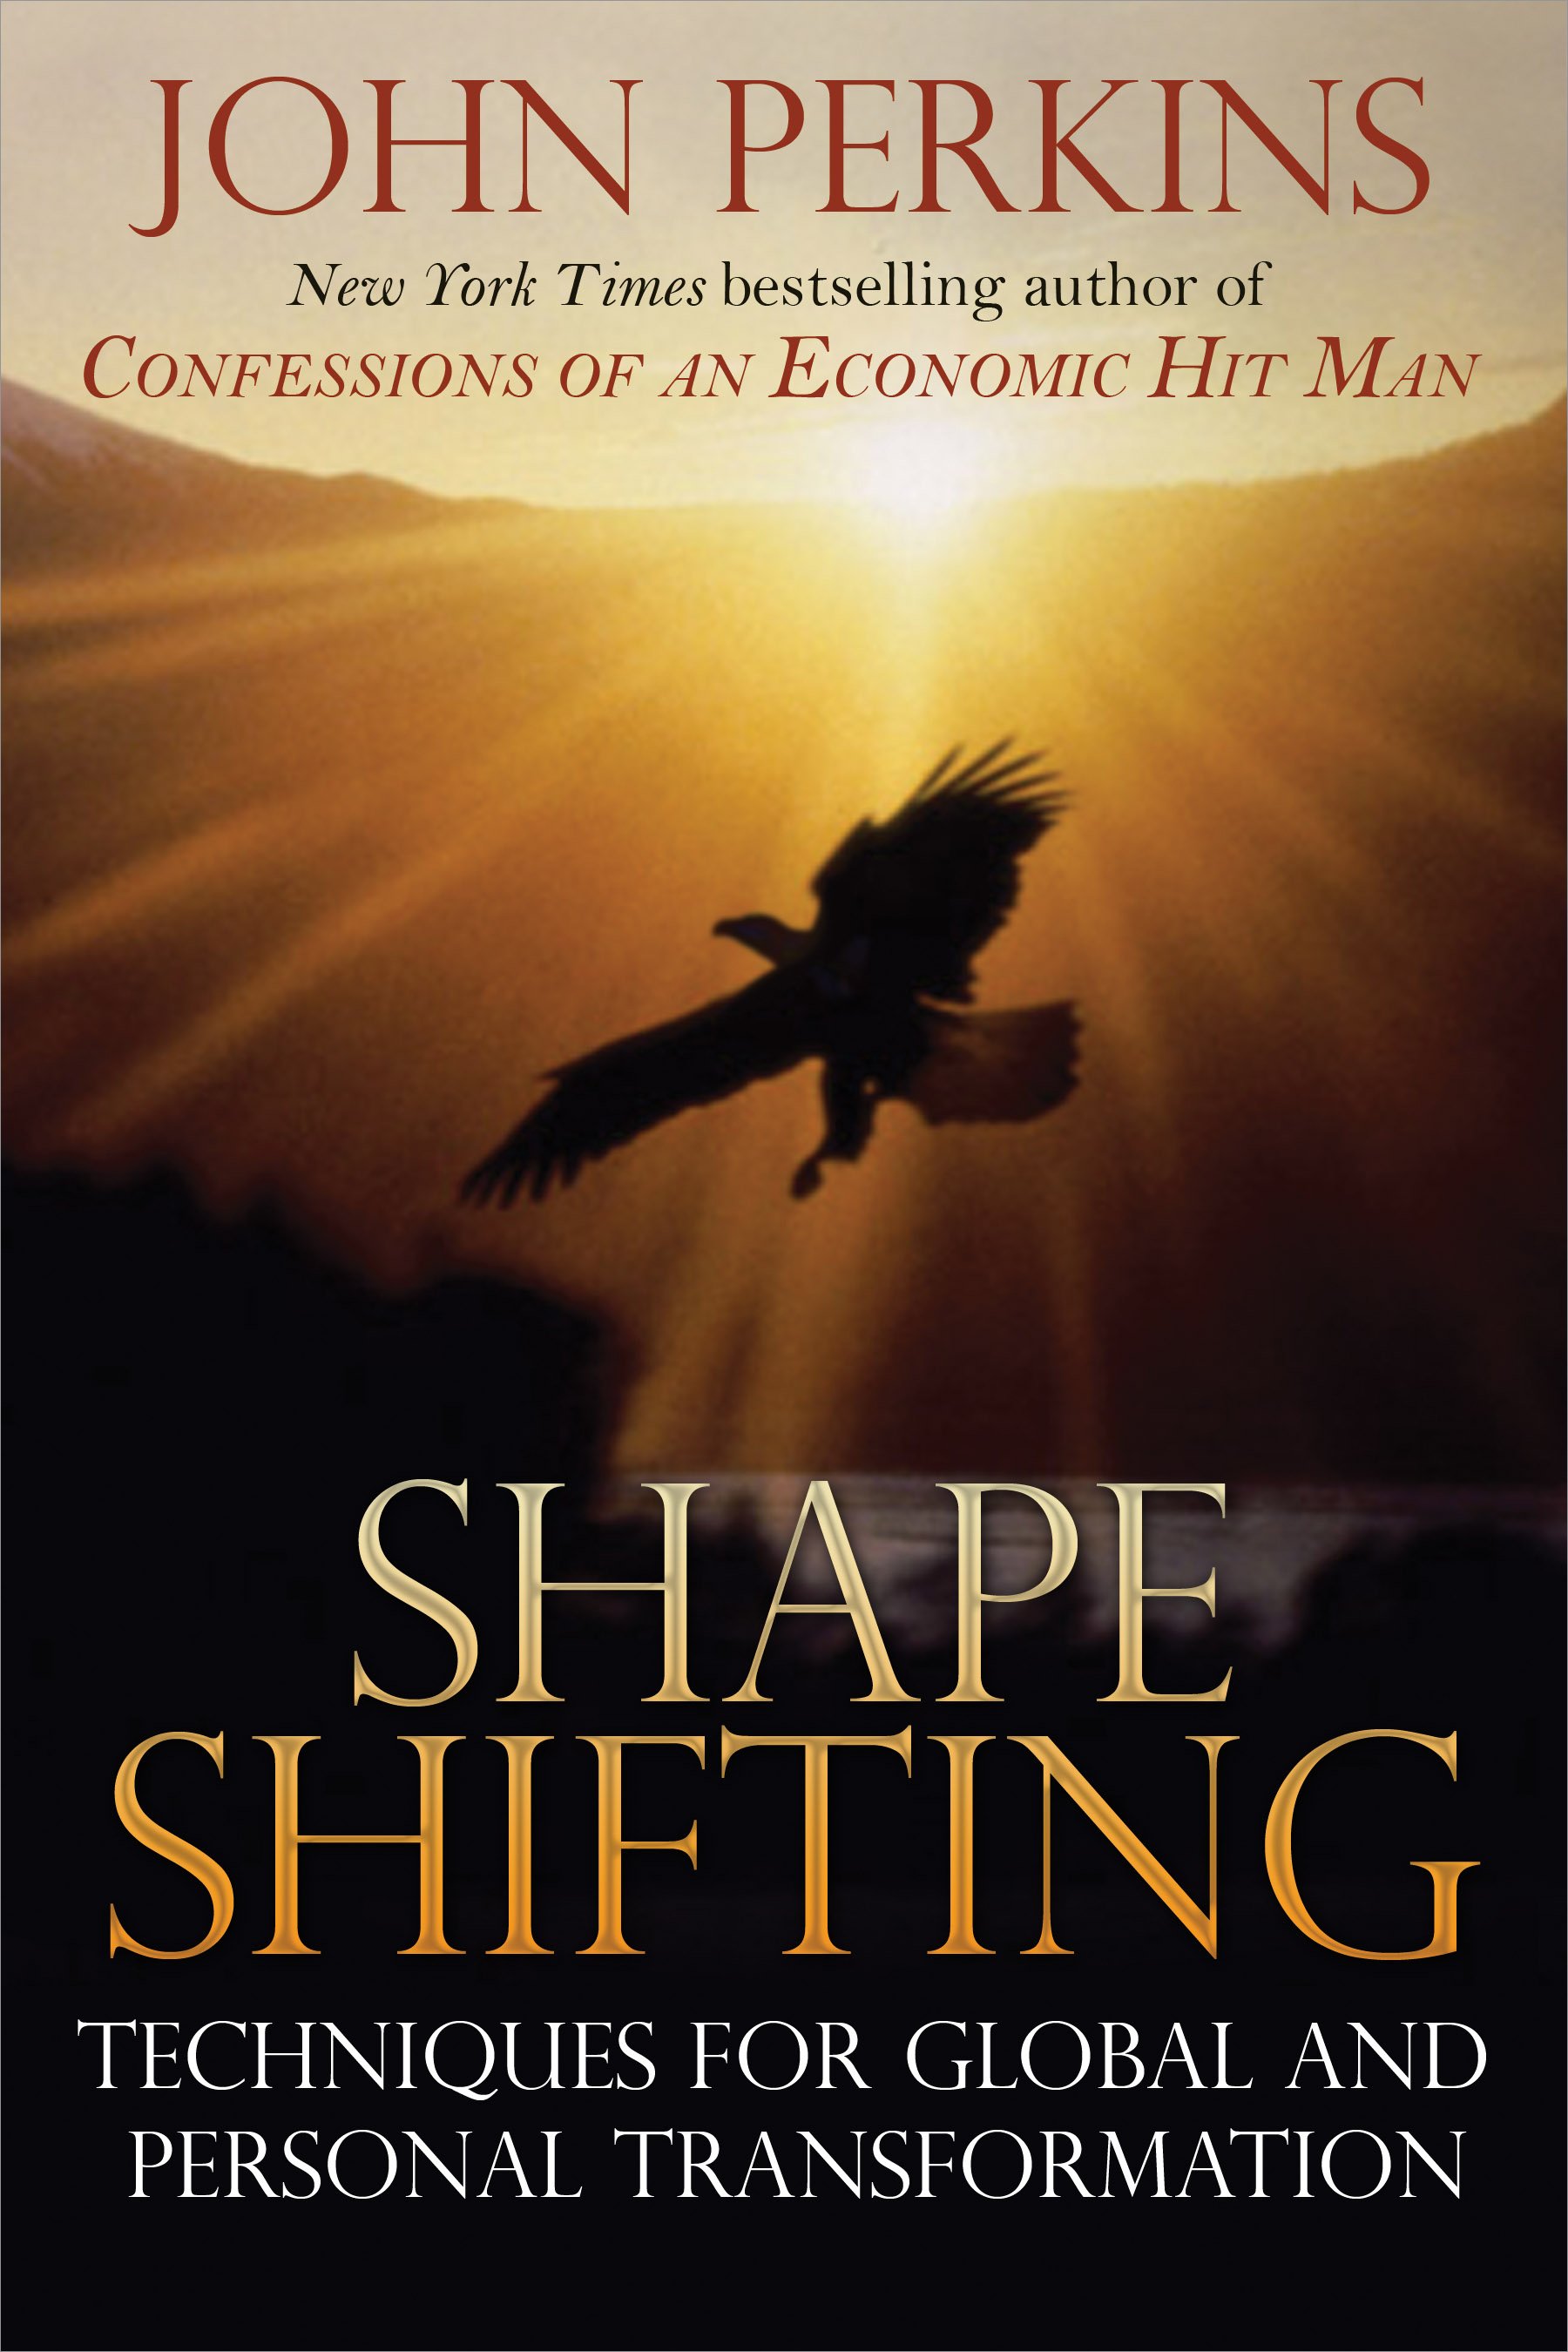 Shapeshifting by John Perkins